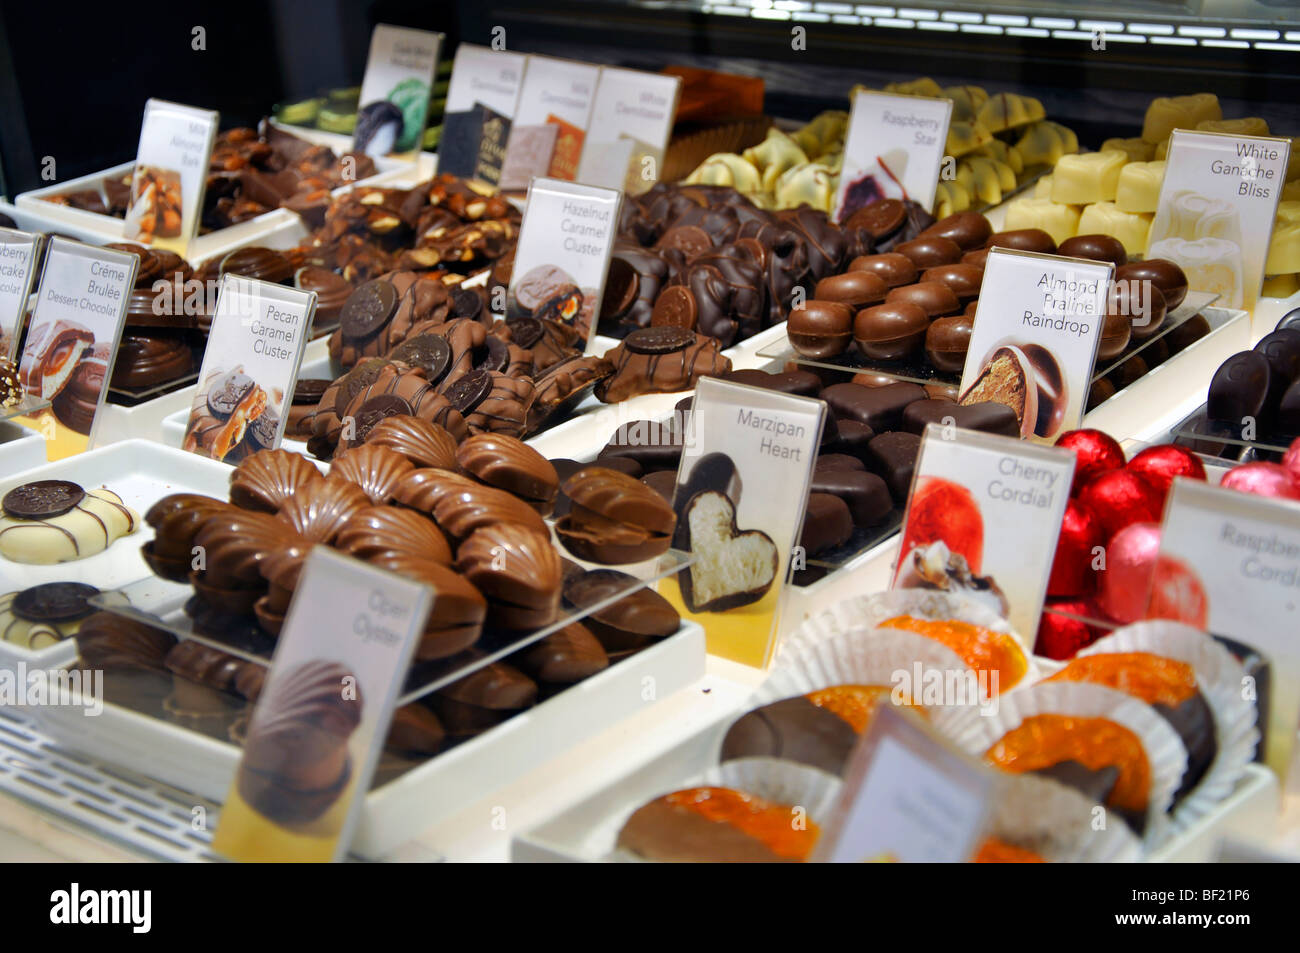 Godiva chocolate store, New York, USA Stock Photo